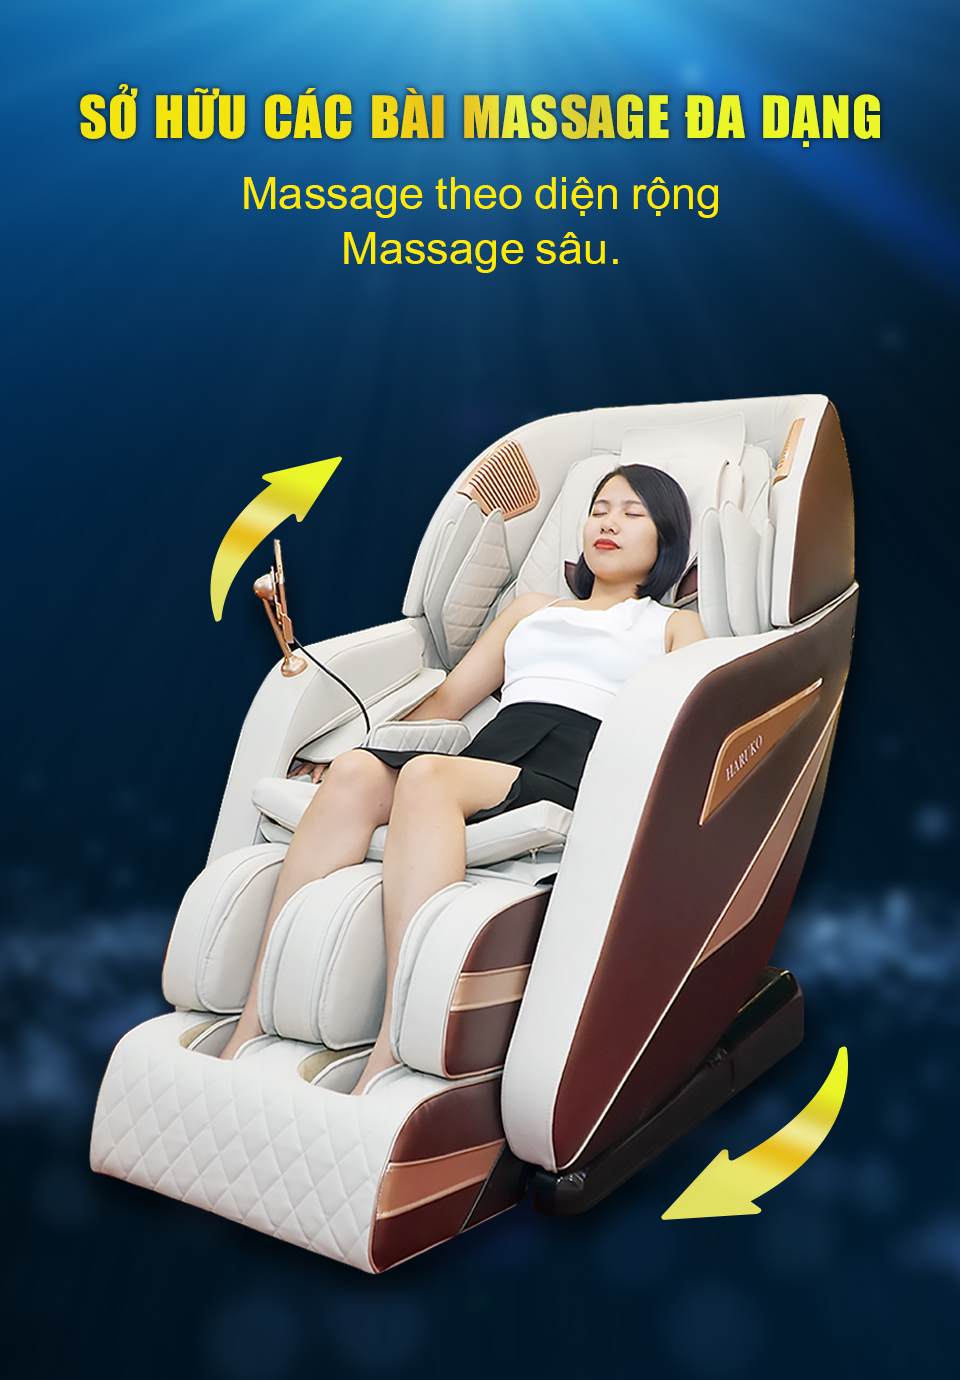 Người dùng ghế massage giờ đây có thể lựa chọn các bài massage đa dạng tùy theo nhu cầu của mỗi người